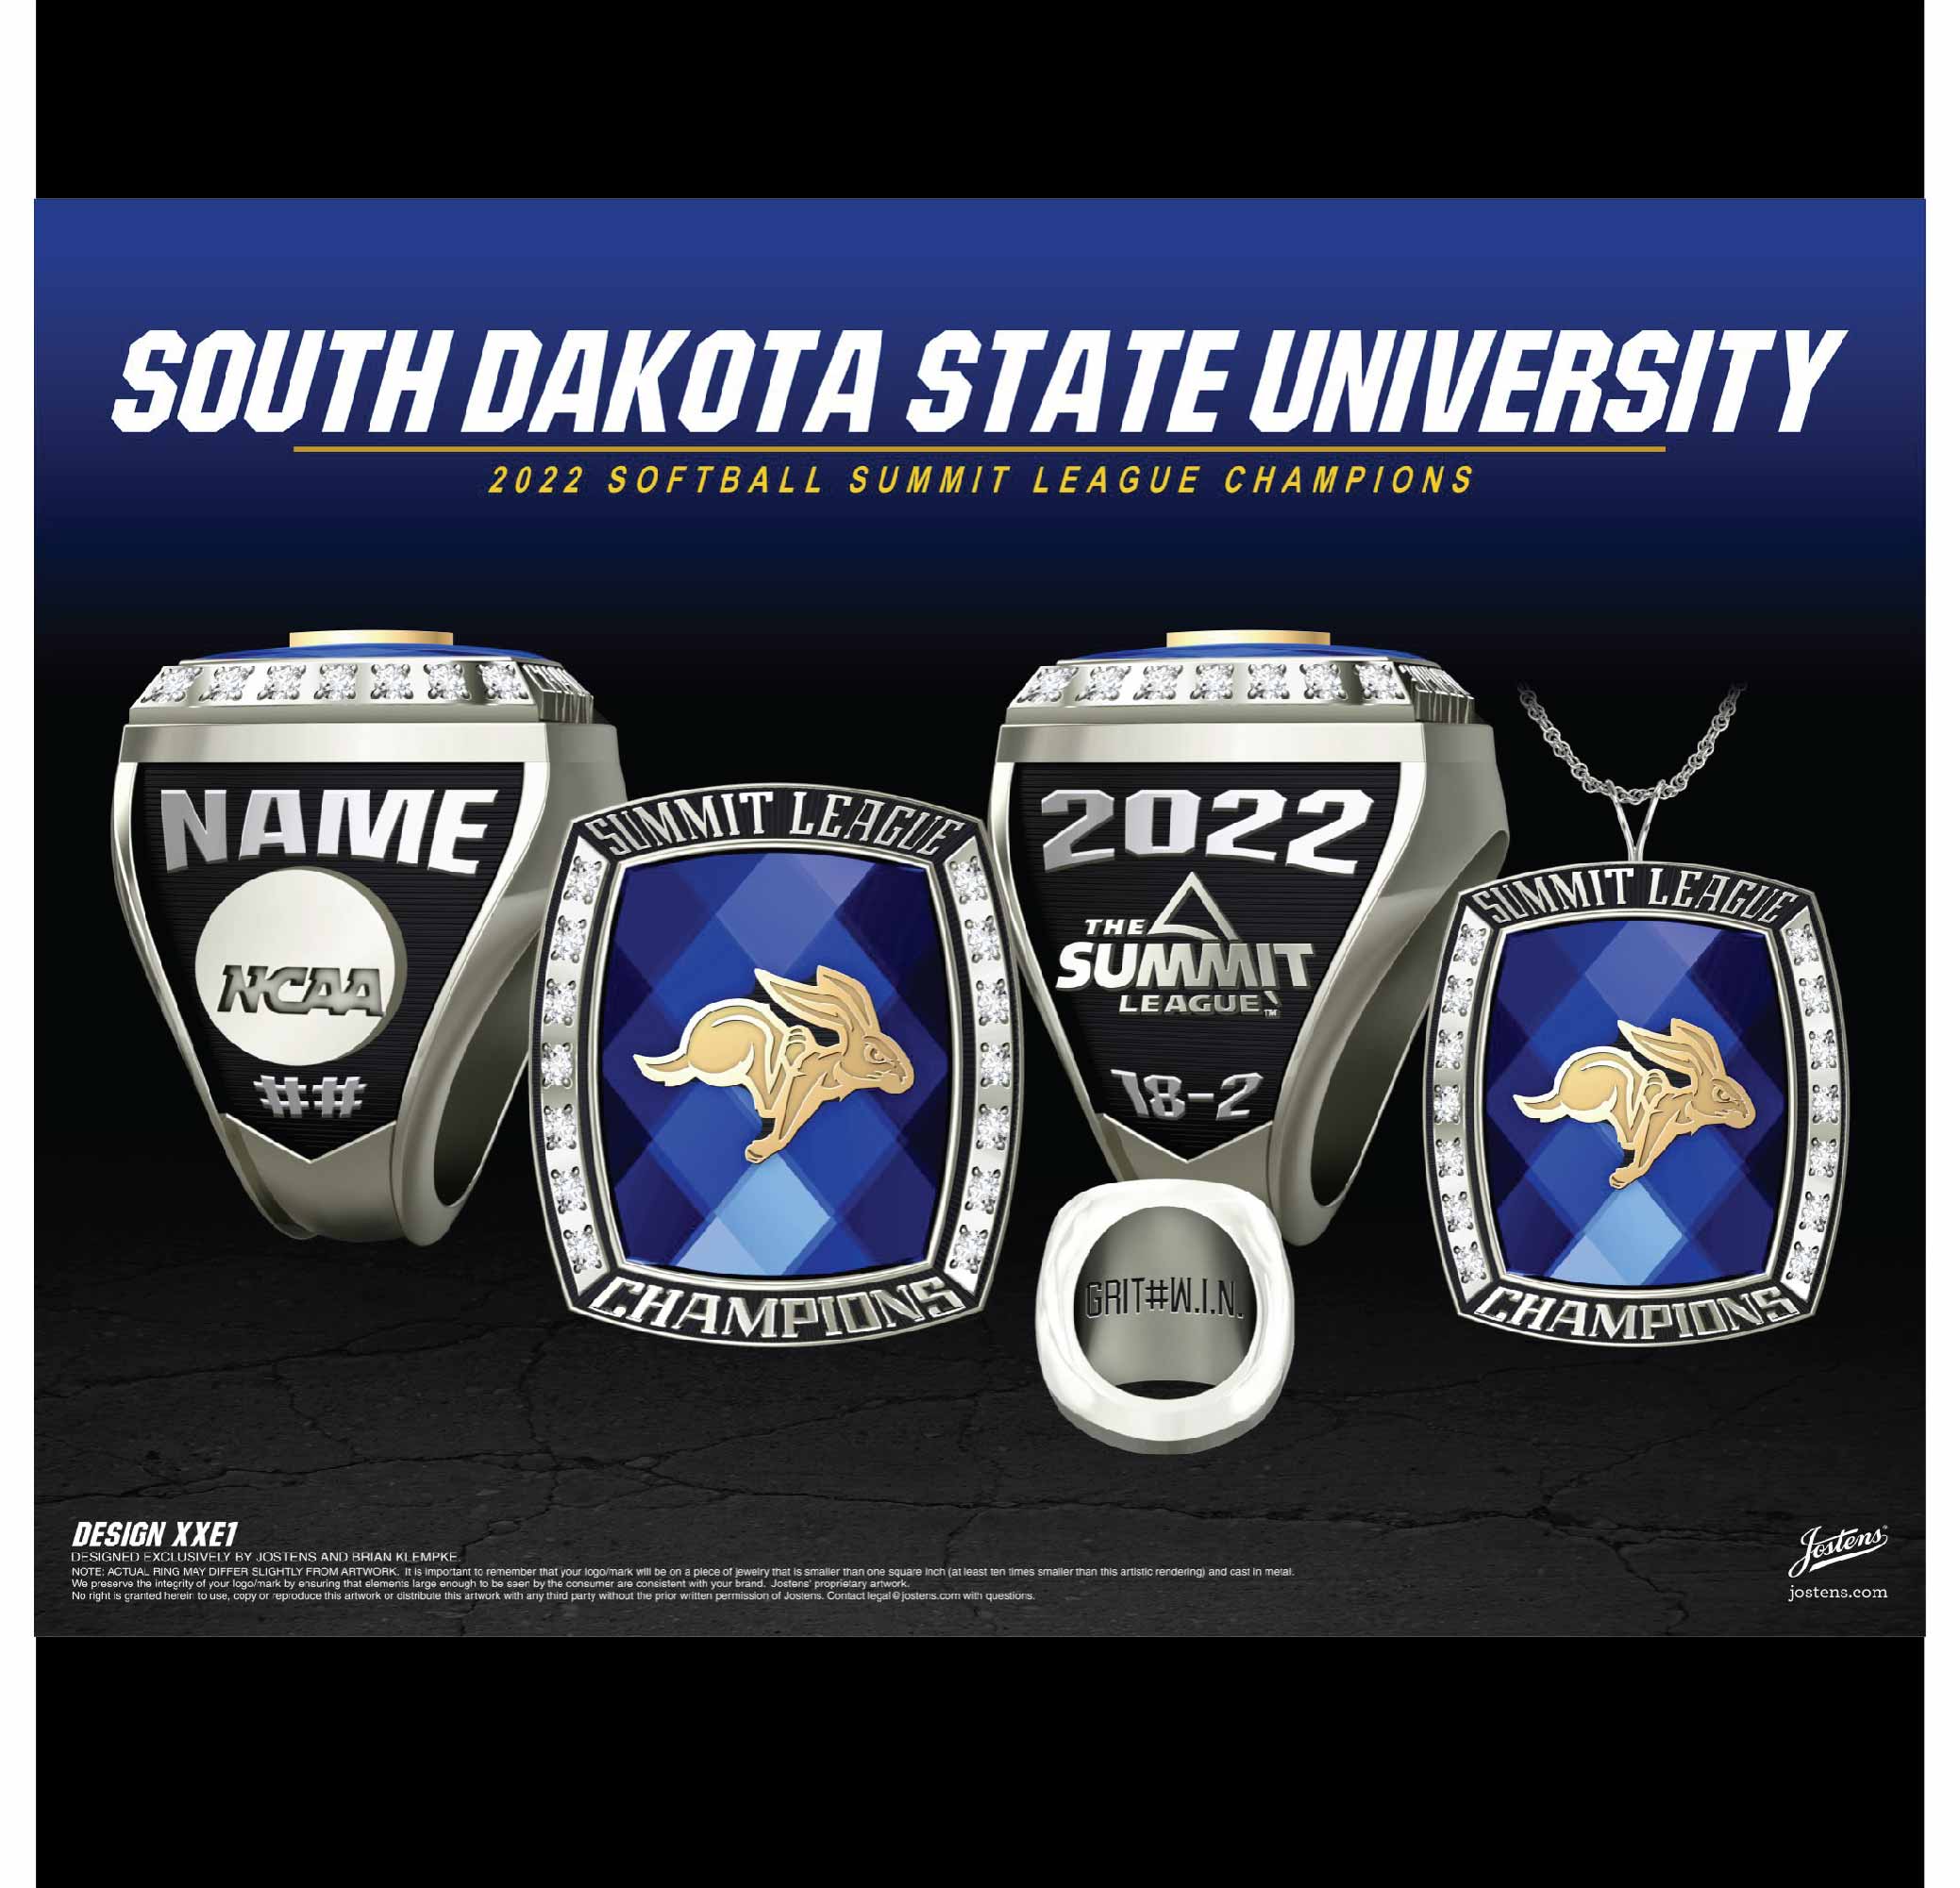 South Dakota State University Softball 2022 Summit League Championship Ring